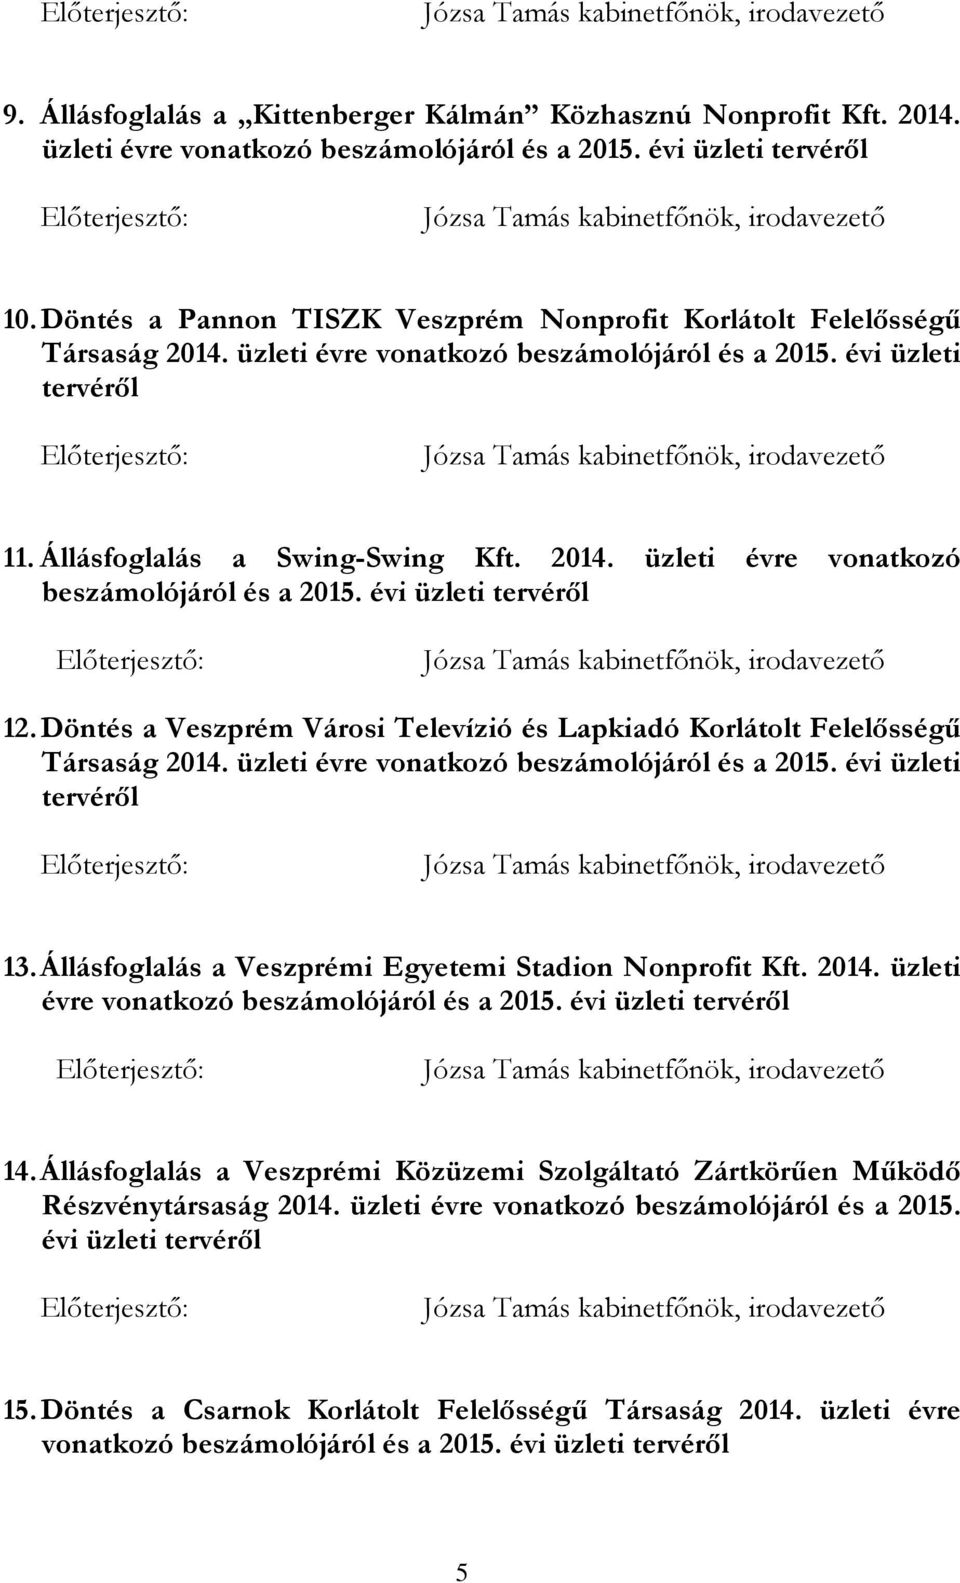 Döntés a Veszprém Városi Televízió és Lapkiadó Korlátolt Felelősségű Társaság 2014. üzleti évre vonatkozó beszámolójáról és a 2015. évi üzleti tervéről 13.